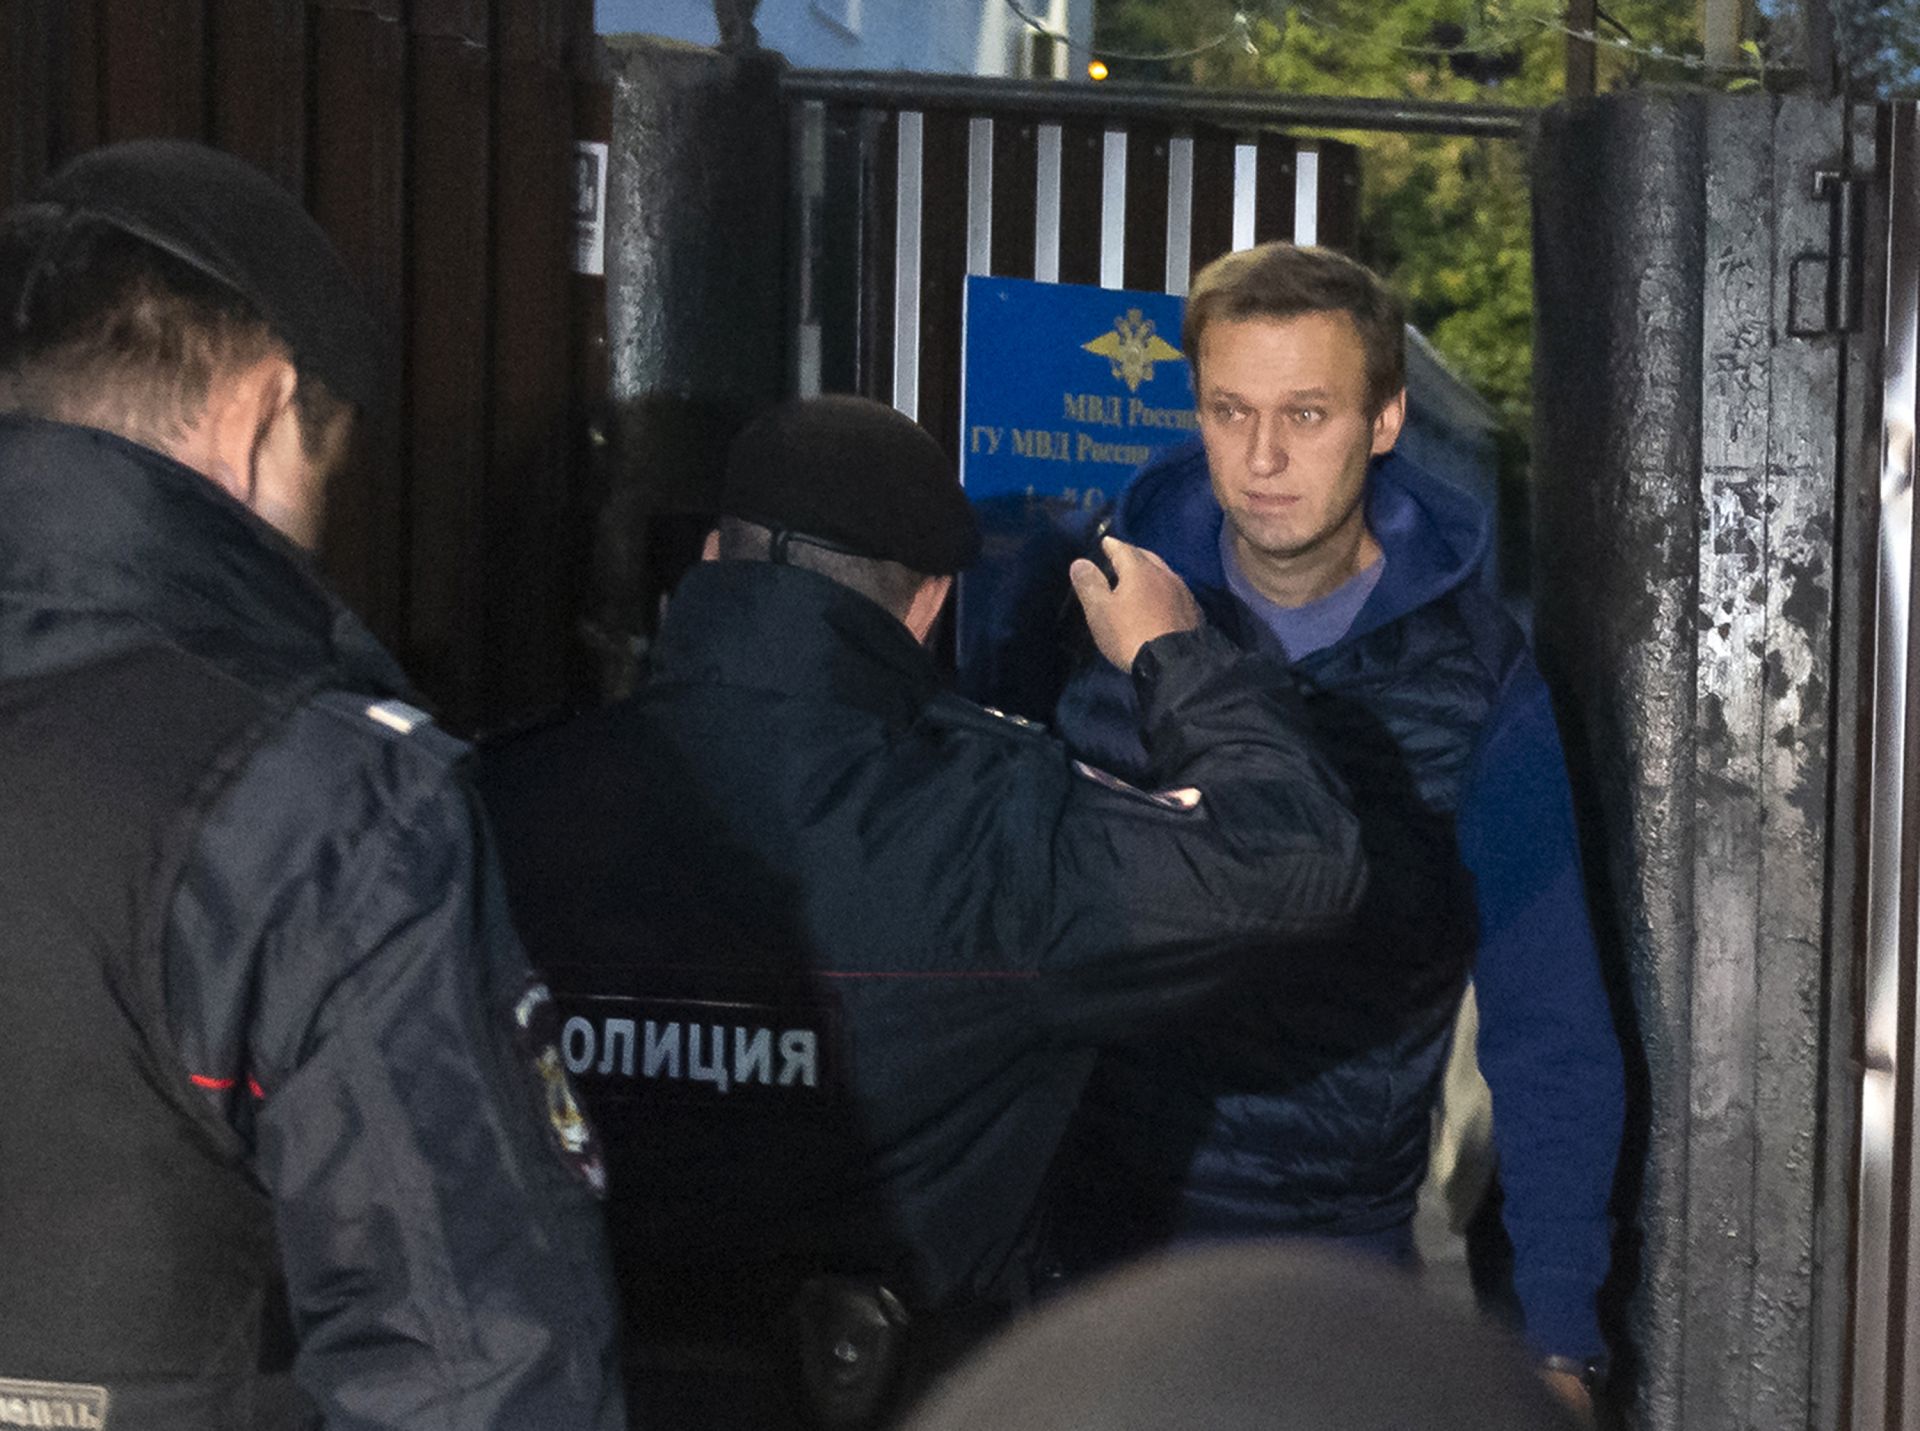 Навални бе очакван призори на изхода на сградата от полицаи, които го отведоха в районно полицейско управление в Москва